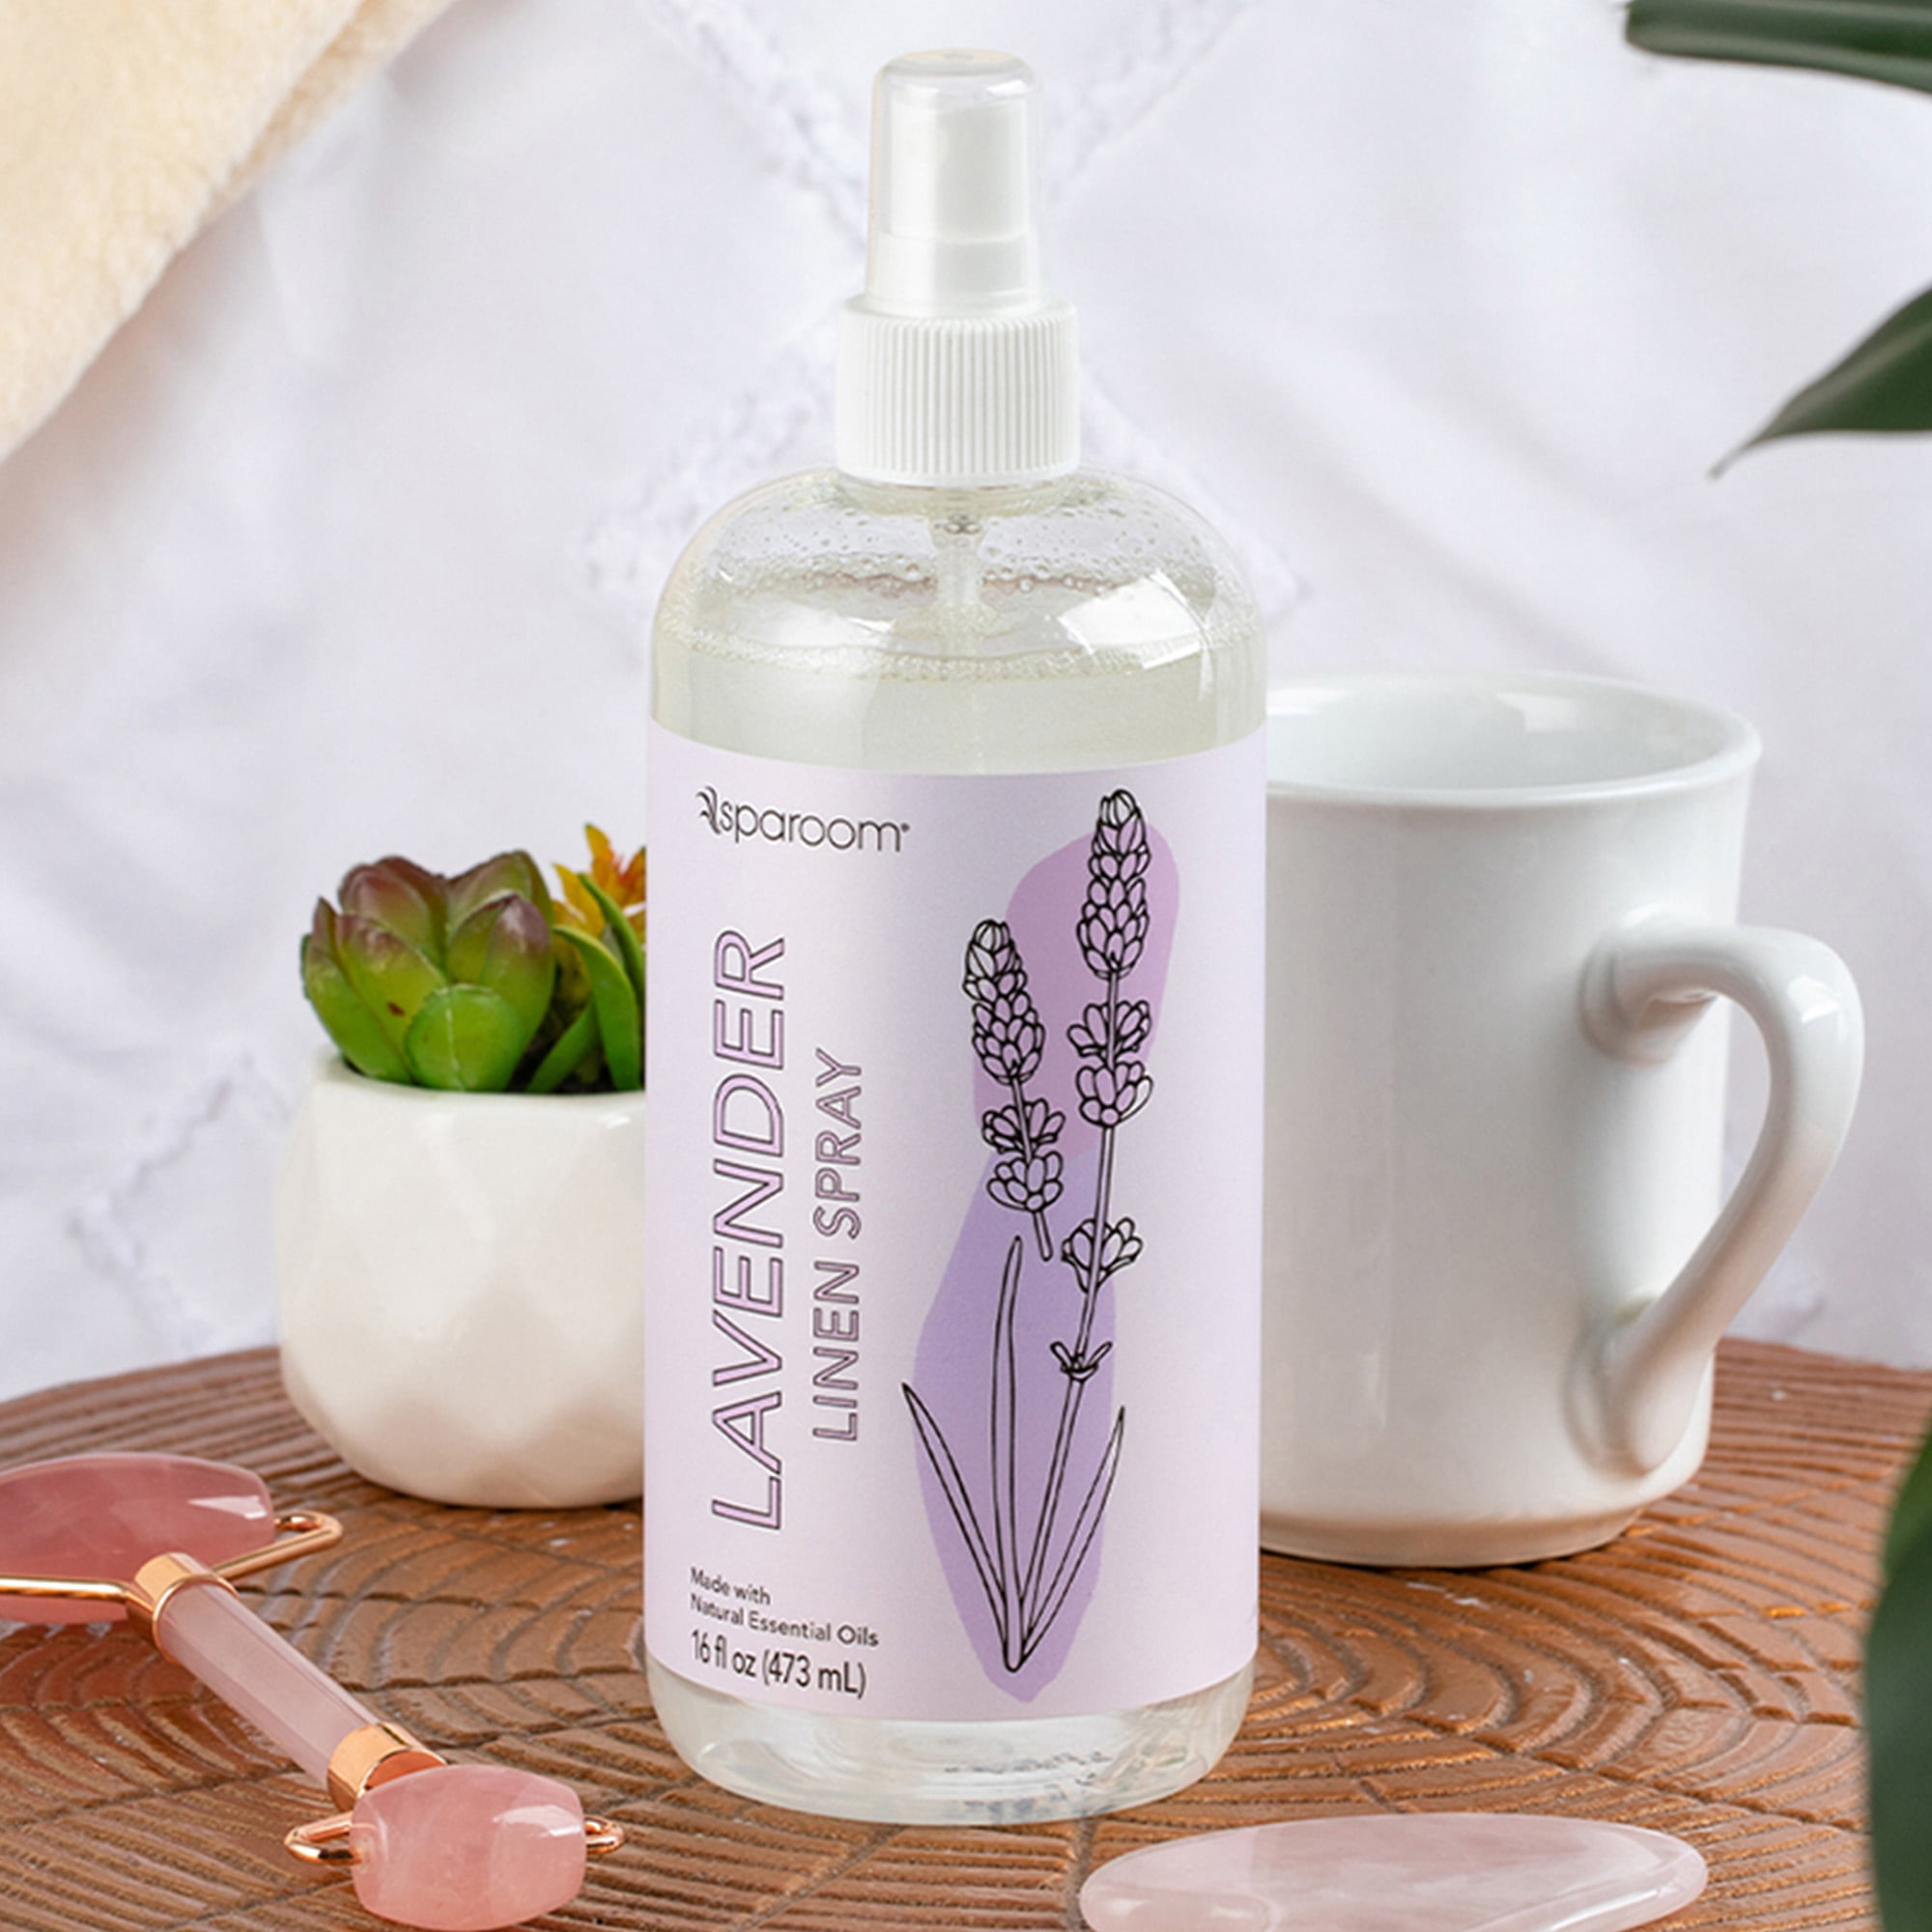 LAVANDE  Lavender Linen Spray